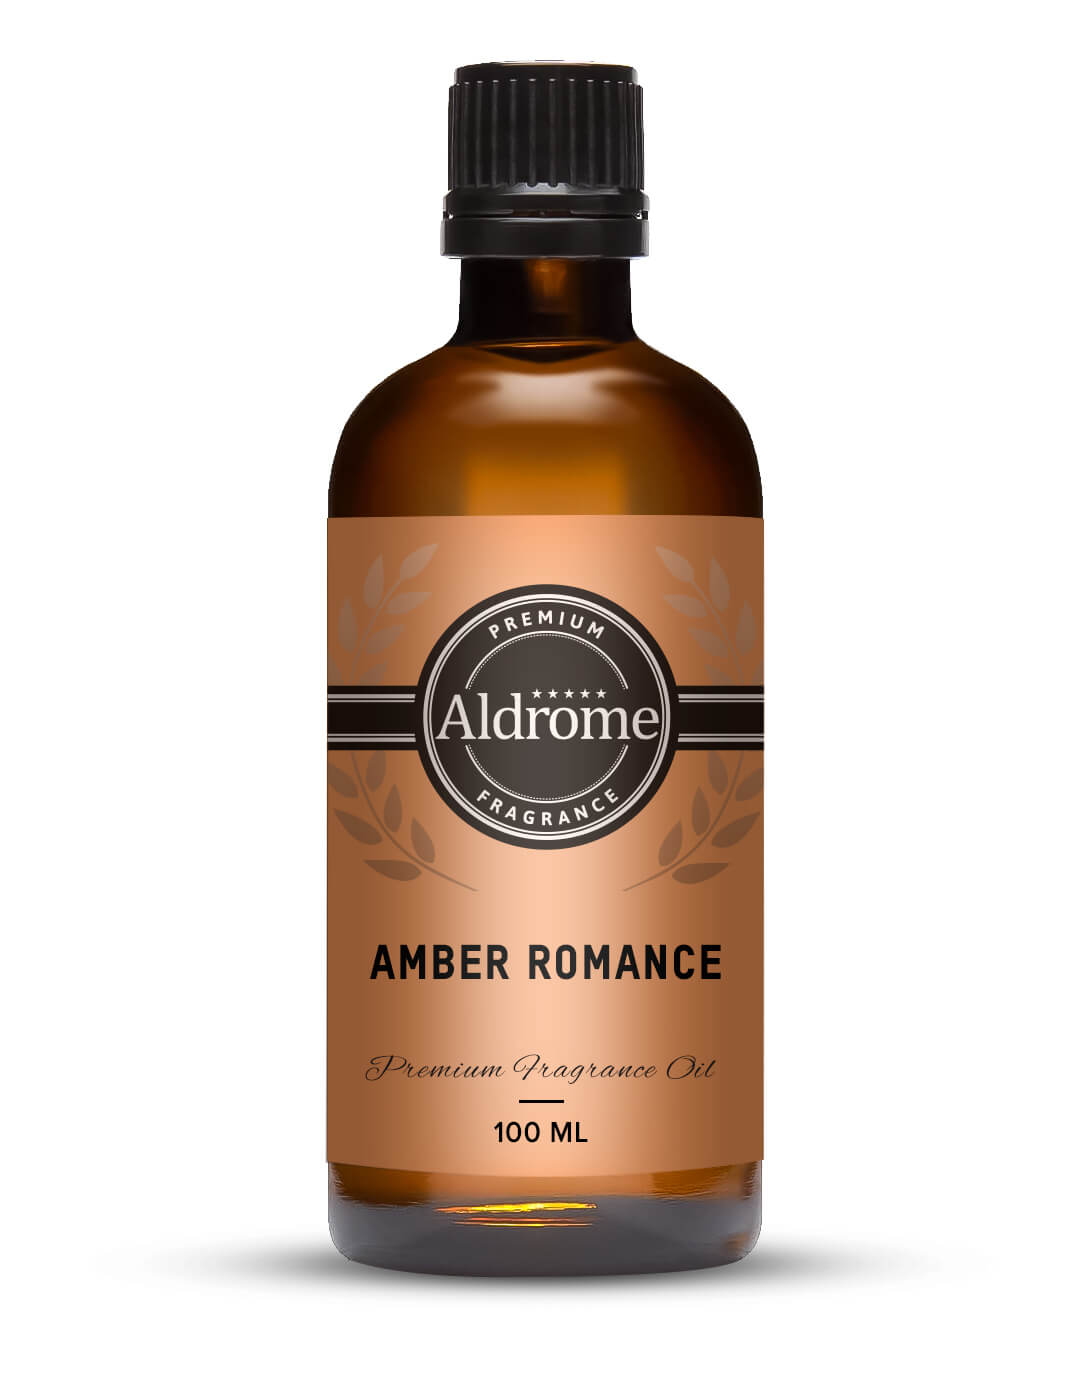 Amber Romance Fragrance Oil - 100ml | Buy Amber Romance Fragrance Oil | Aldrome Premium Fragrance Oil